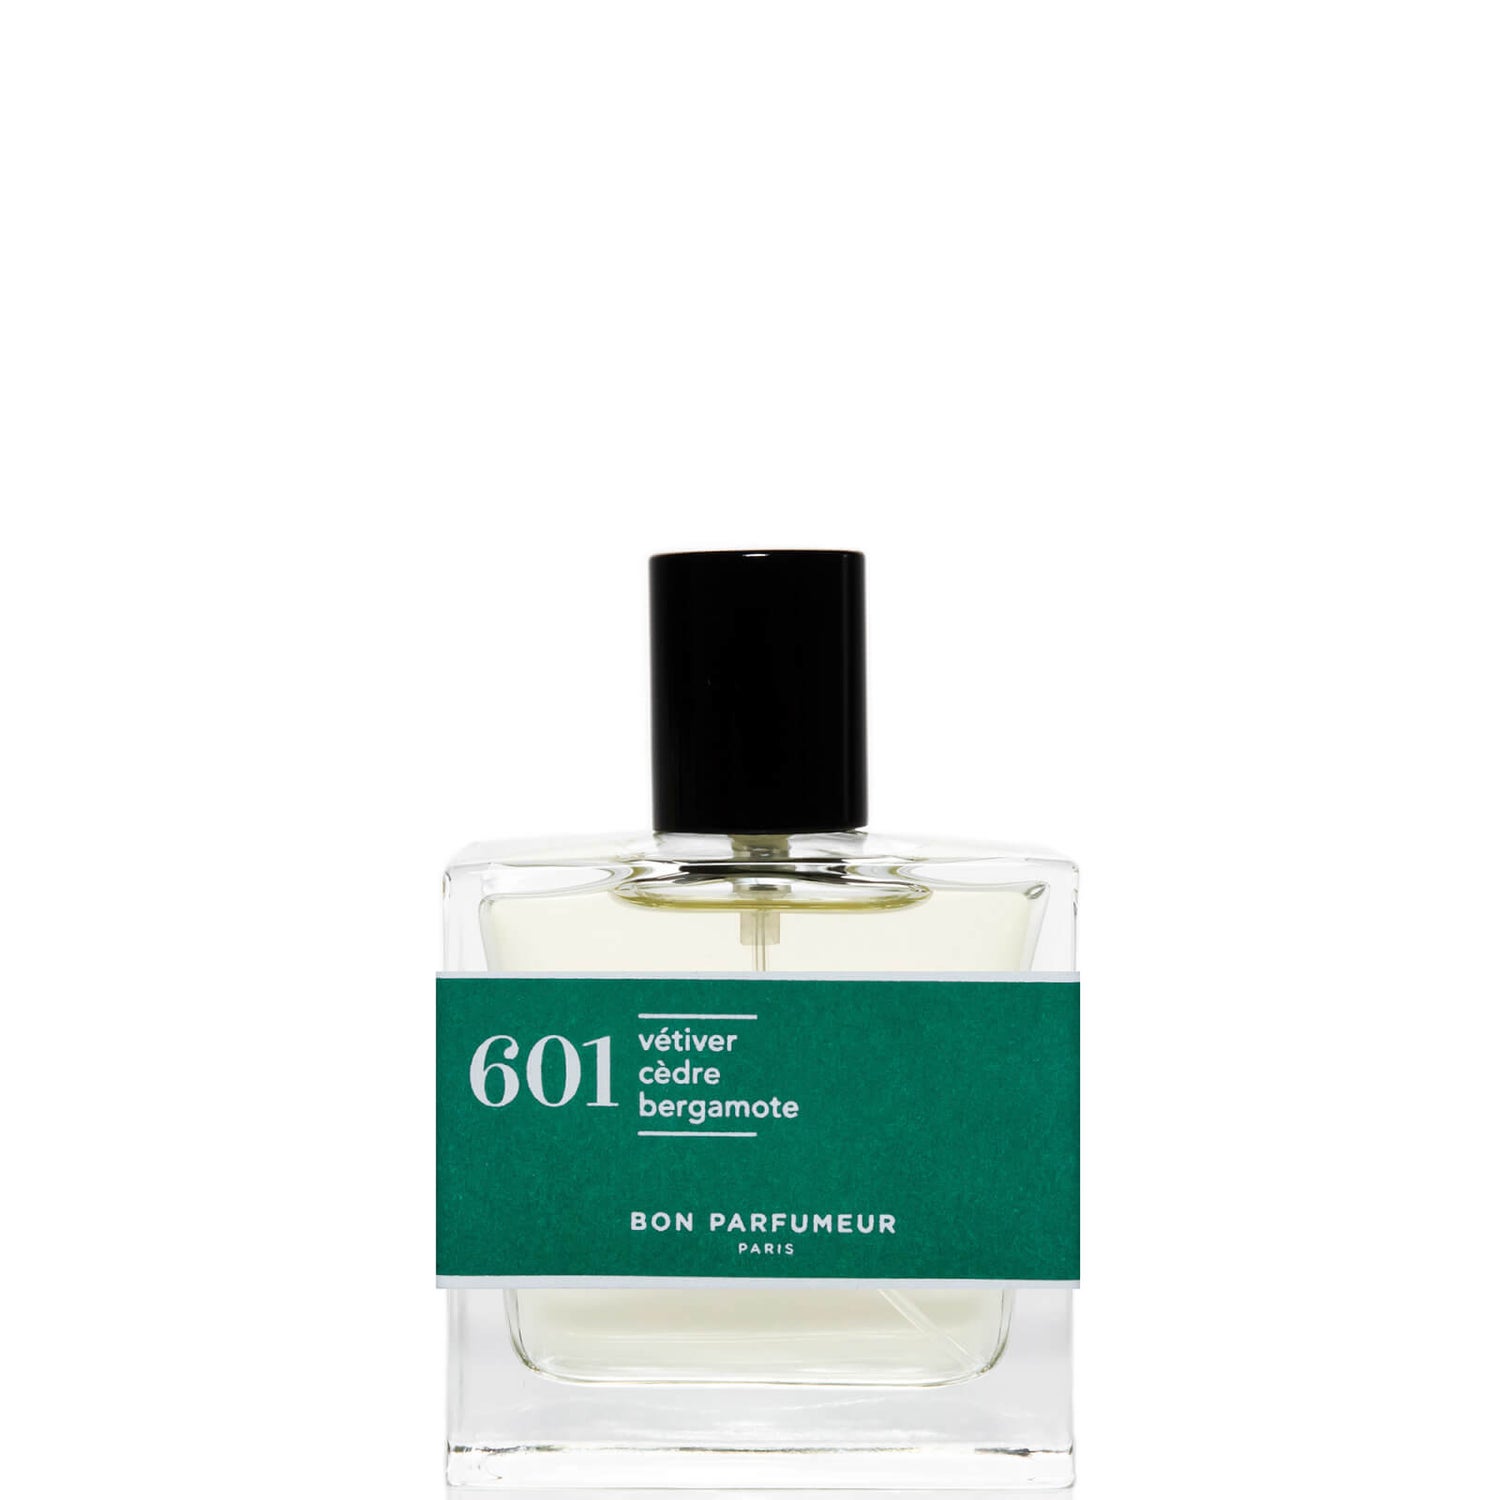 Bon Parfumeur 601 Vetiver Cedar Bergamot Apă de parfum - 30ml